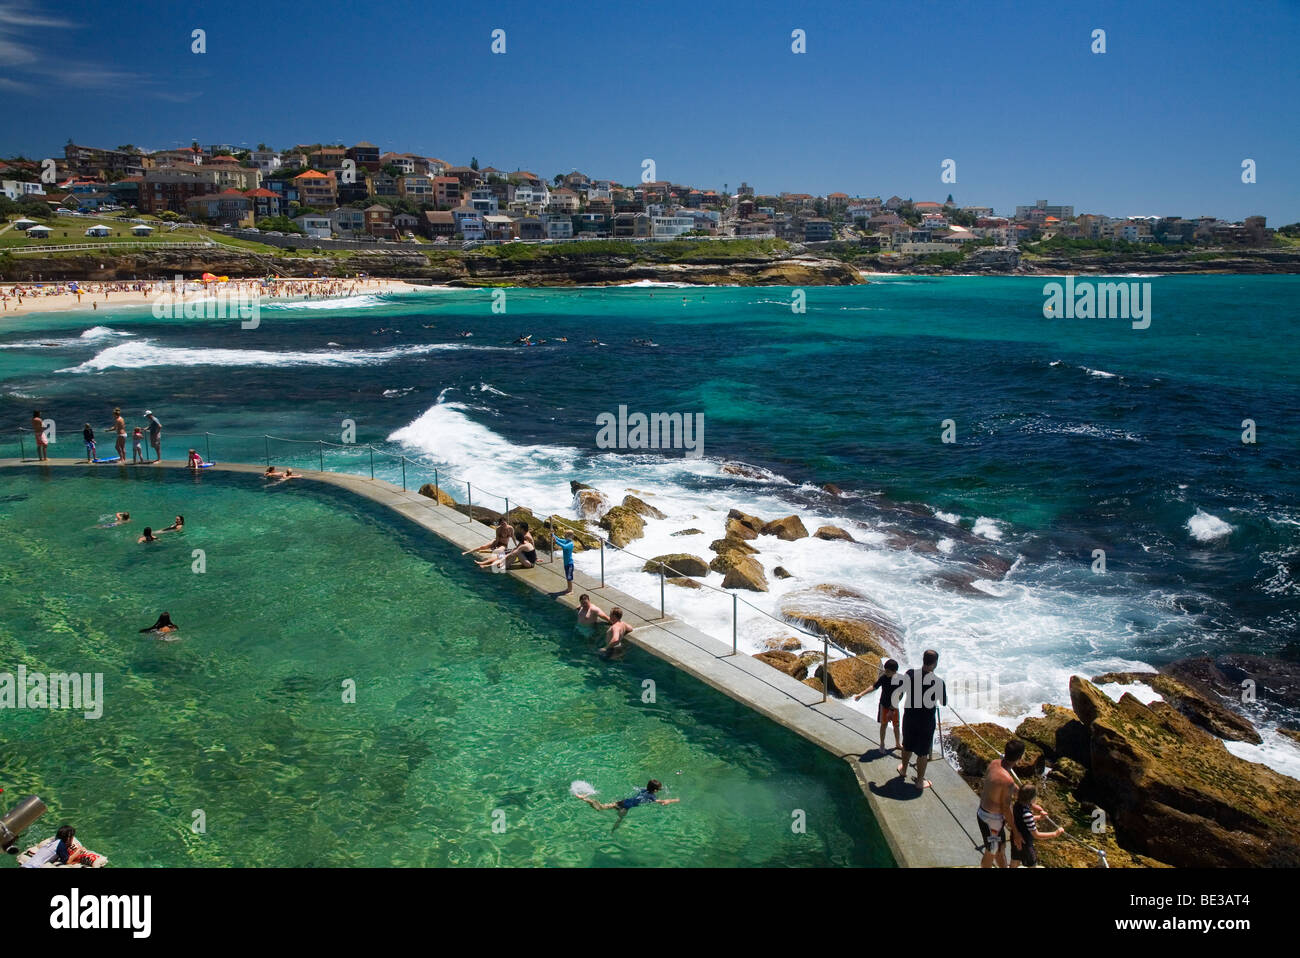 Les bains de Bronte - un océan populaires piscine remplie à Bronte Beach. Sydney, New South Wales, Australia Banque D'Images